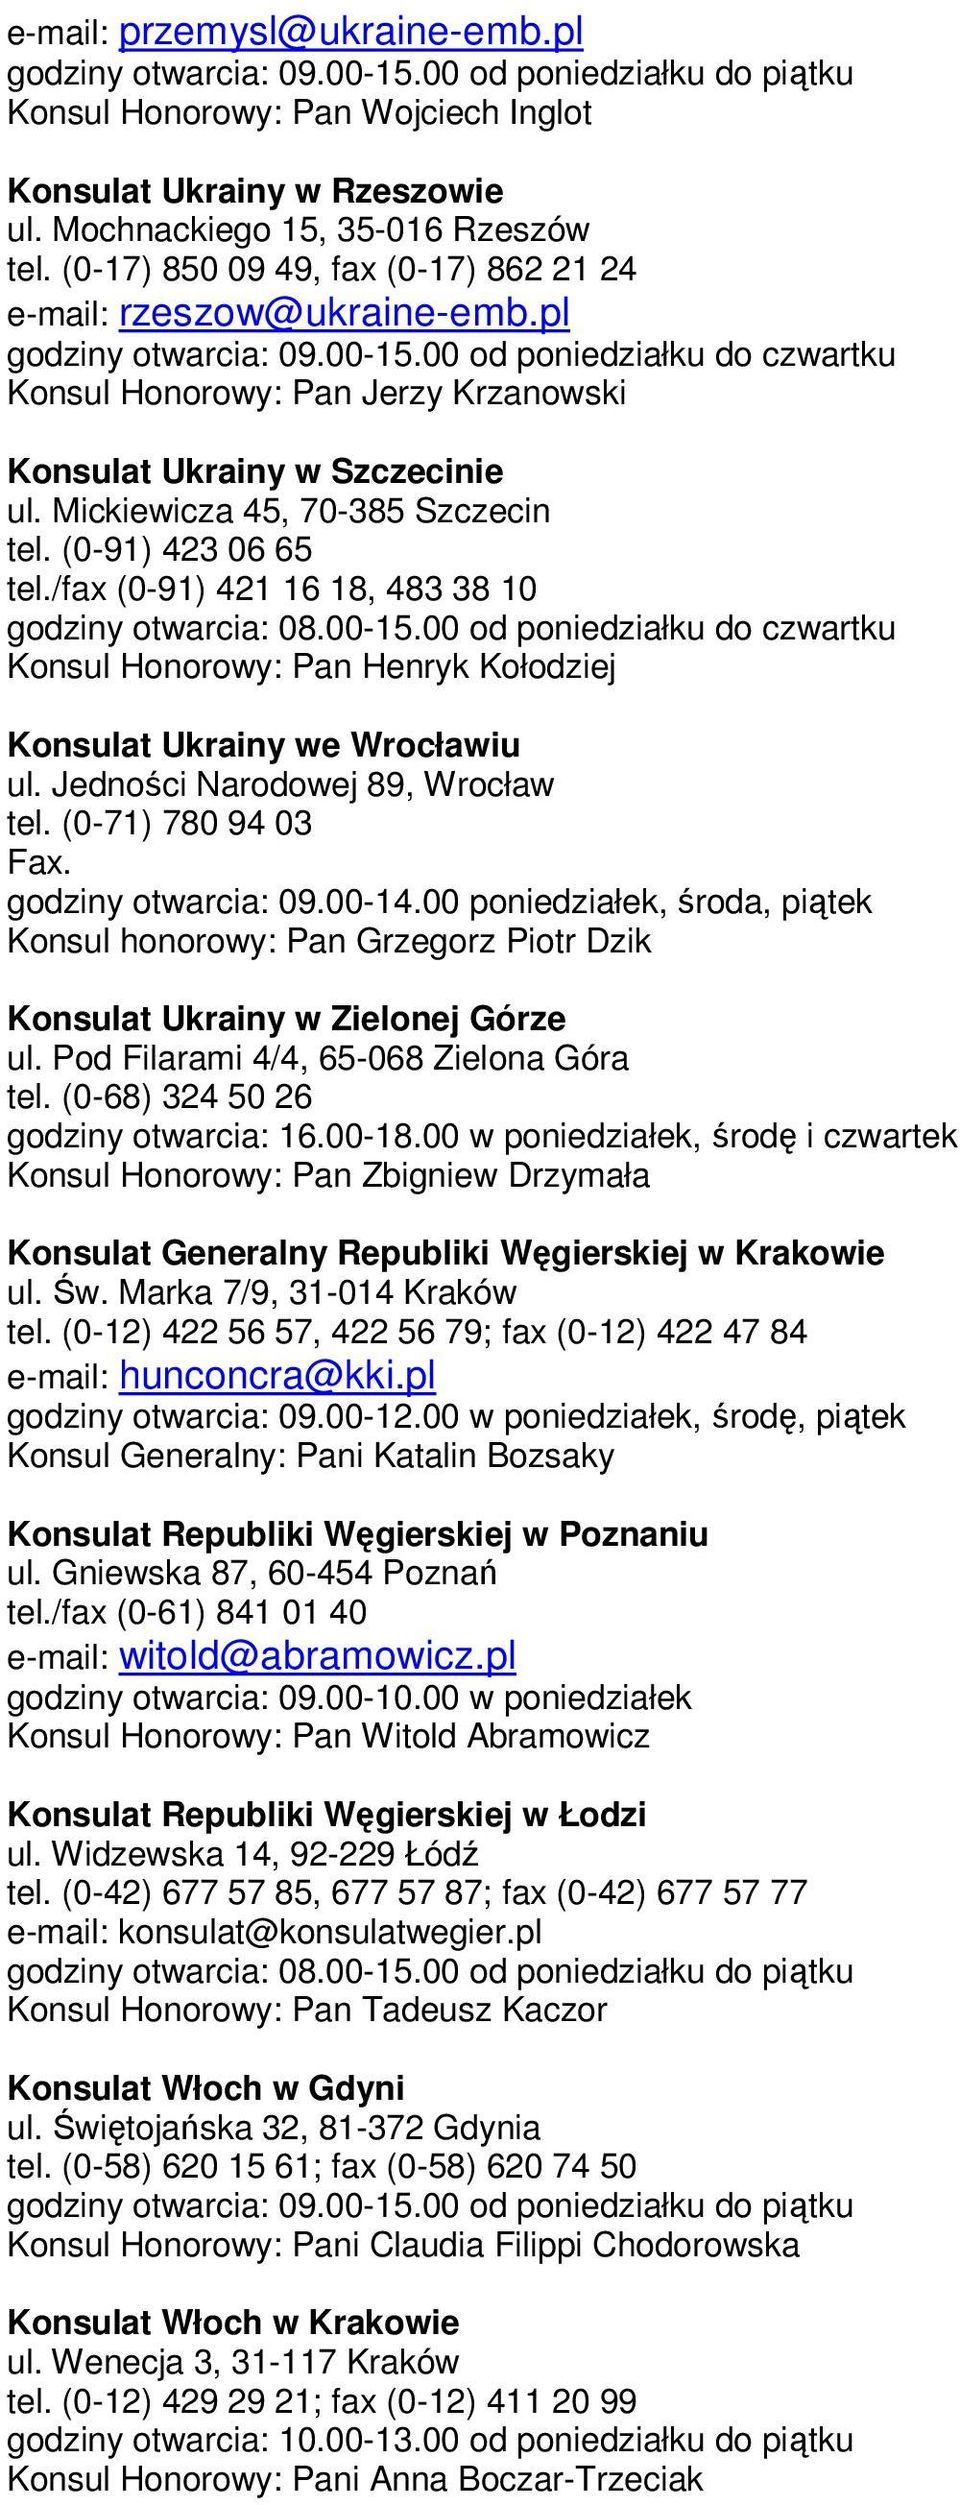 Mickiewicza 45, 70-385 Szczecin tel. (0-91) 423 06 65 tel./fax (0-91) 421 16 18, 483 38 10 godziny otwarcia: 08.00-15.